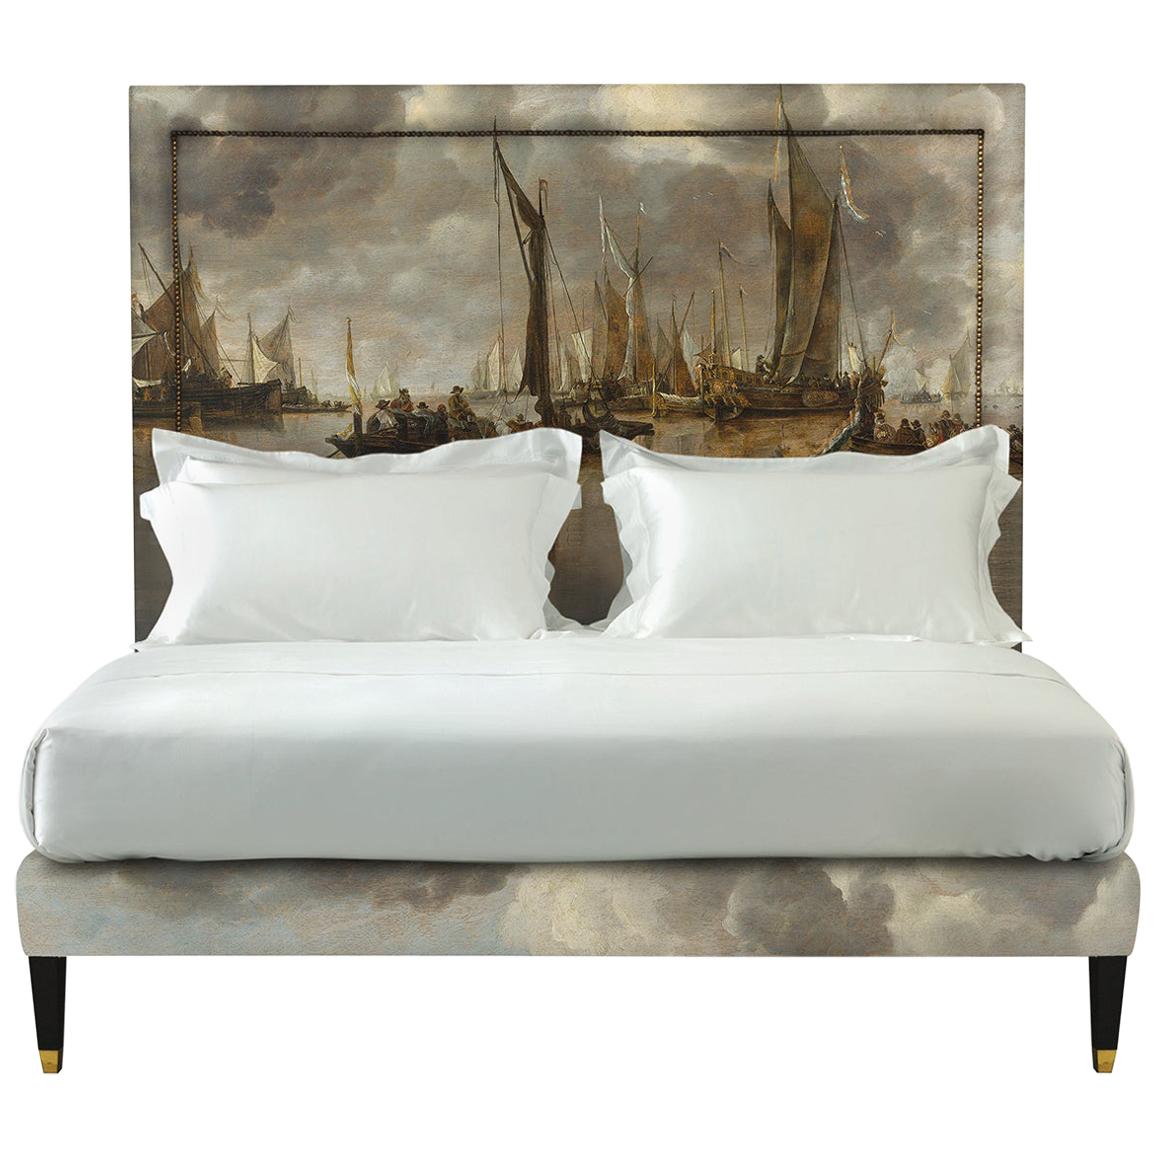 Savoir Felix Headboard with Jan van de Cappelle’s Art & Nº4 Bed Set, Queen Size  For Sale